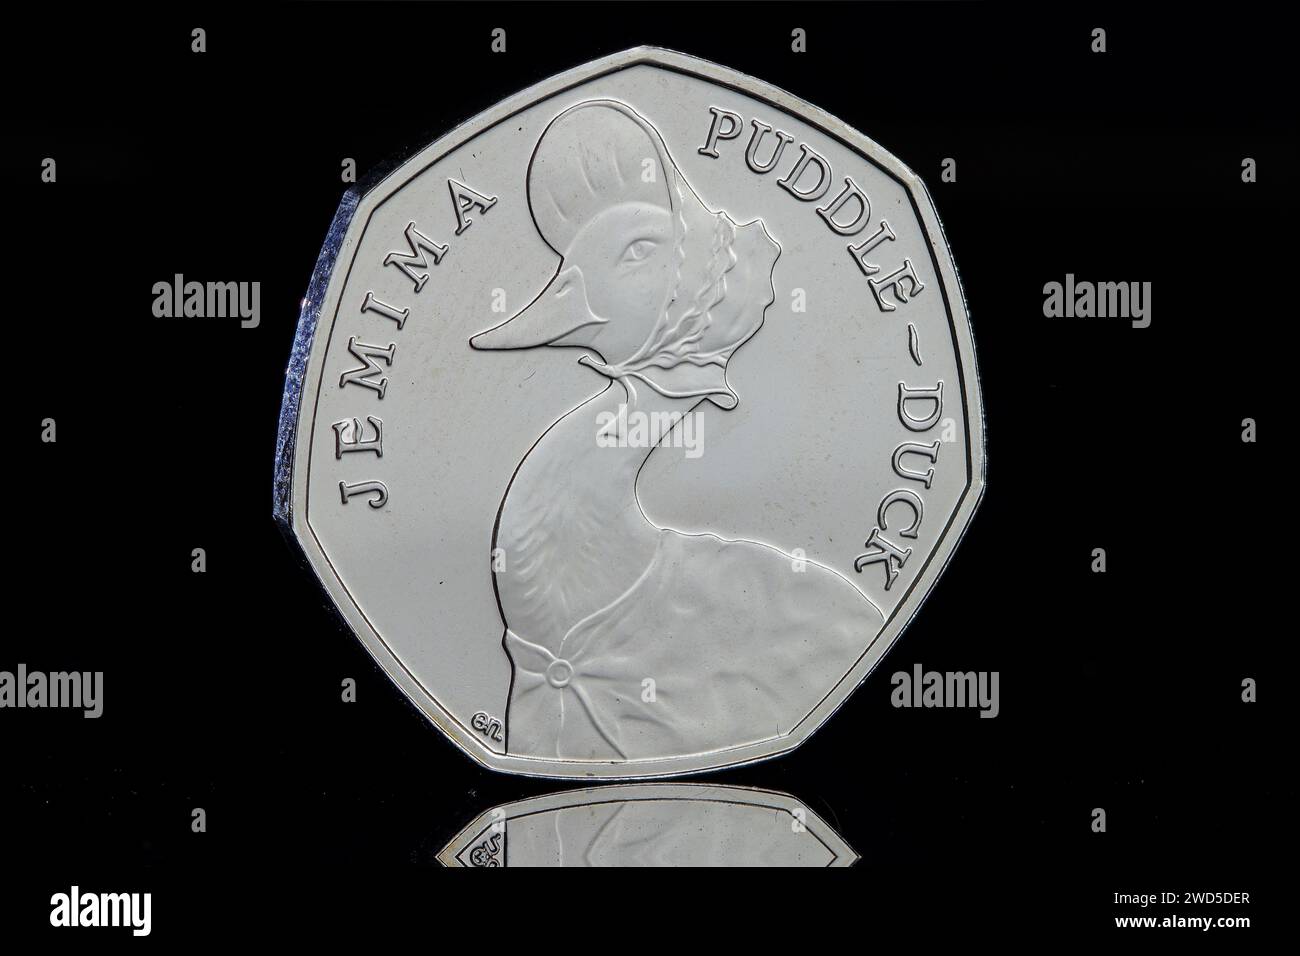 Moneta da 50 pence con Jemima Puddleduck di Beatrix Potter. Il dritto mostra il quinto ritratto della moneta di Jody Clark Foto Stock